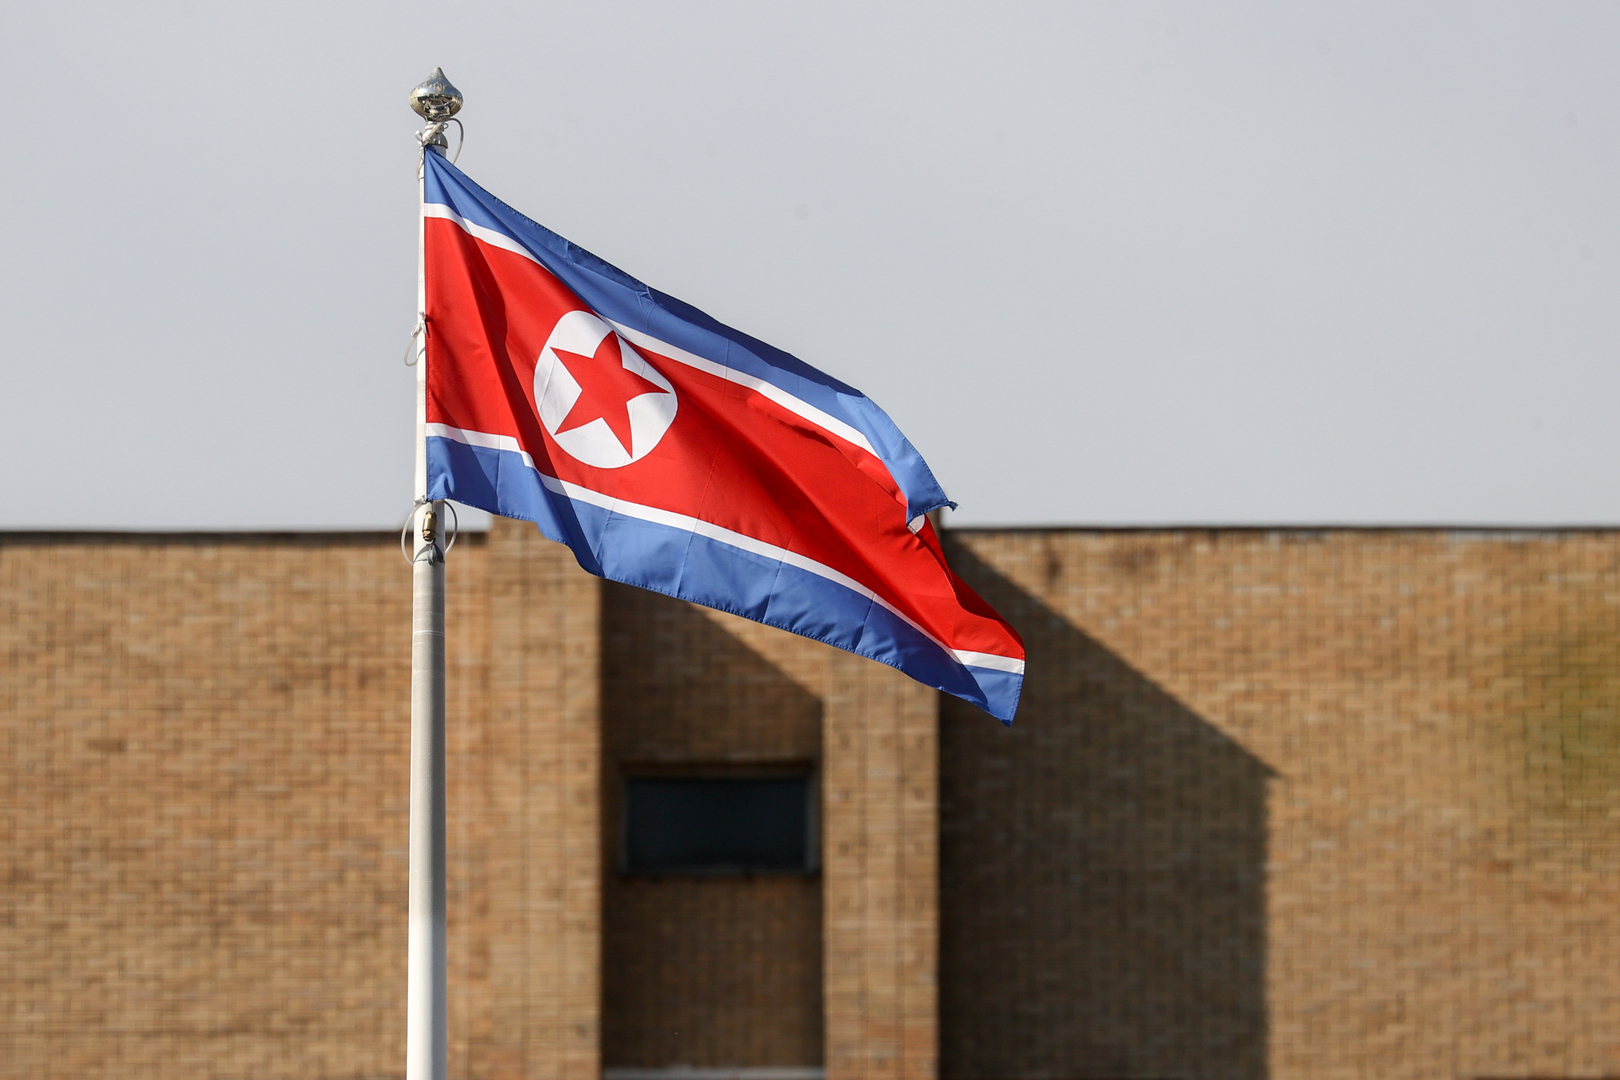 كوريا الشمالية تضع قمرا صناعيا عسكريا في المدار بنجاح